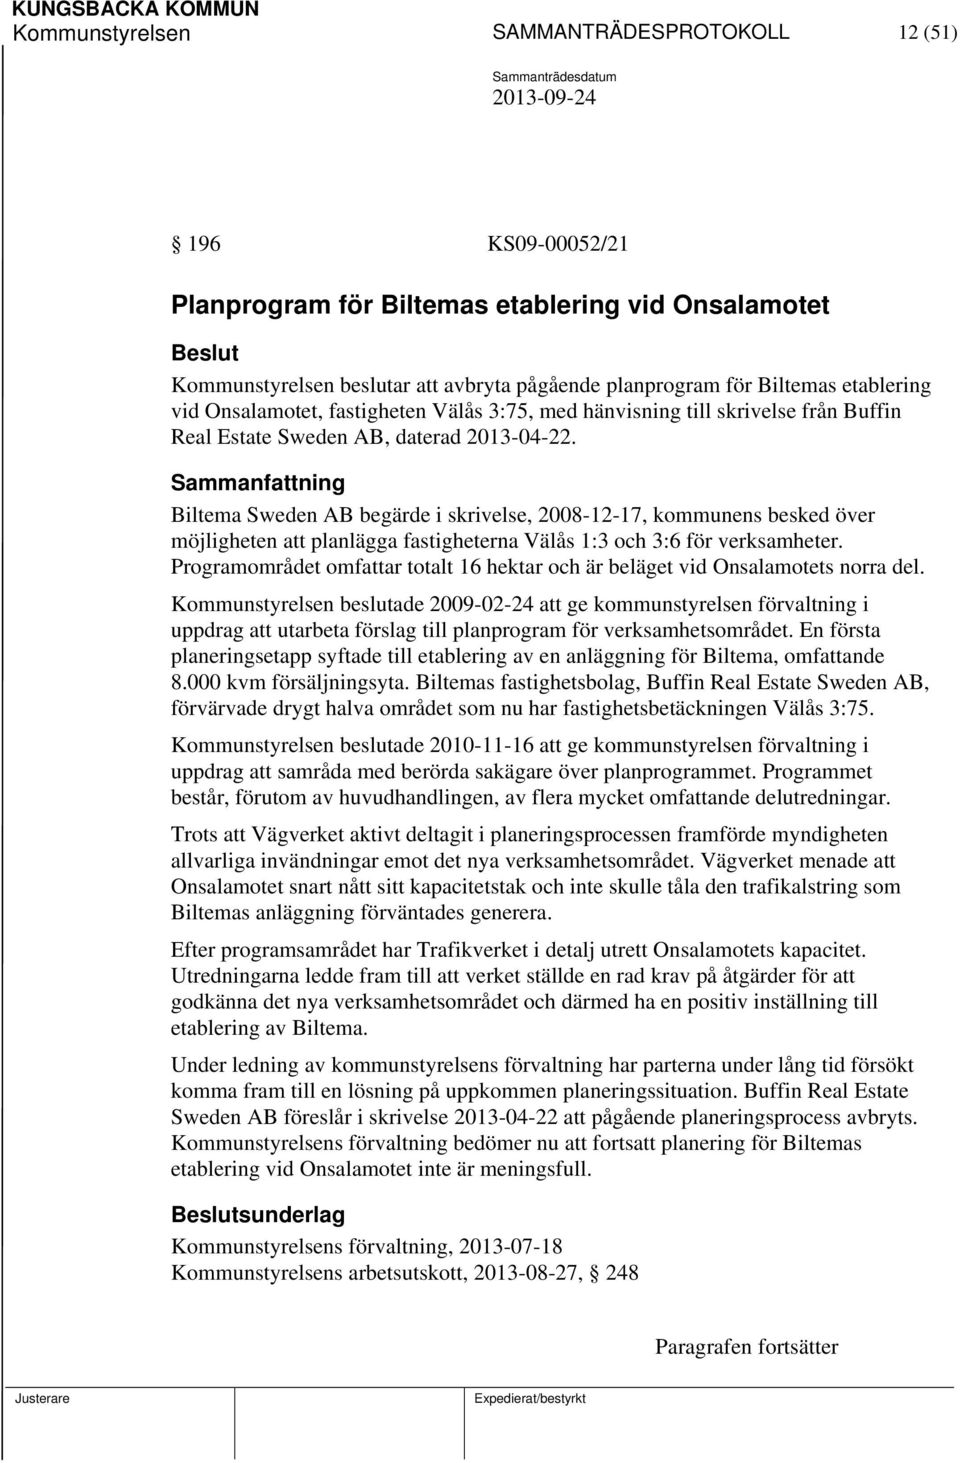 Biltema Sweden AB begärde i skrivelse, 2008-12-17, kommunens besked över möjligheten att planlägga fastigheterna Välås 1:3 och 3:6 för verksamheter.